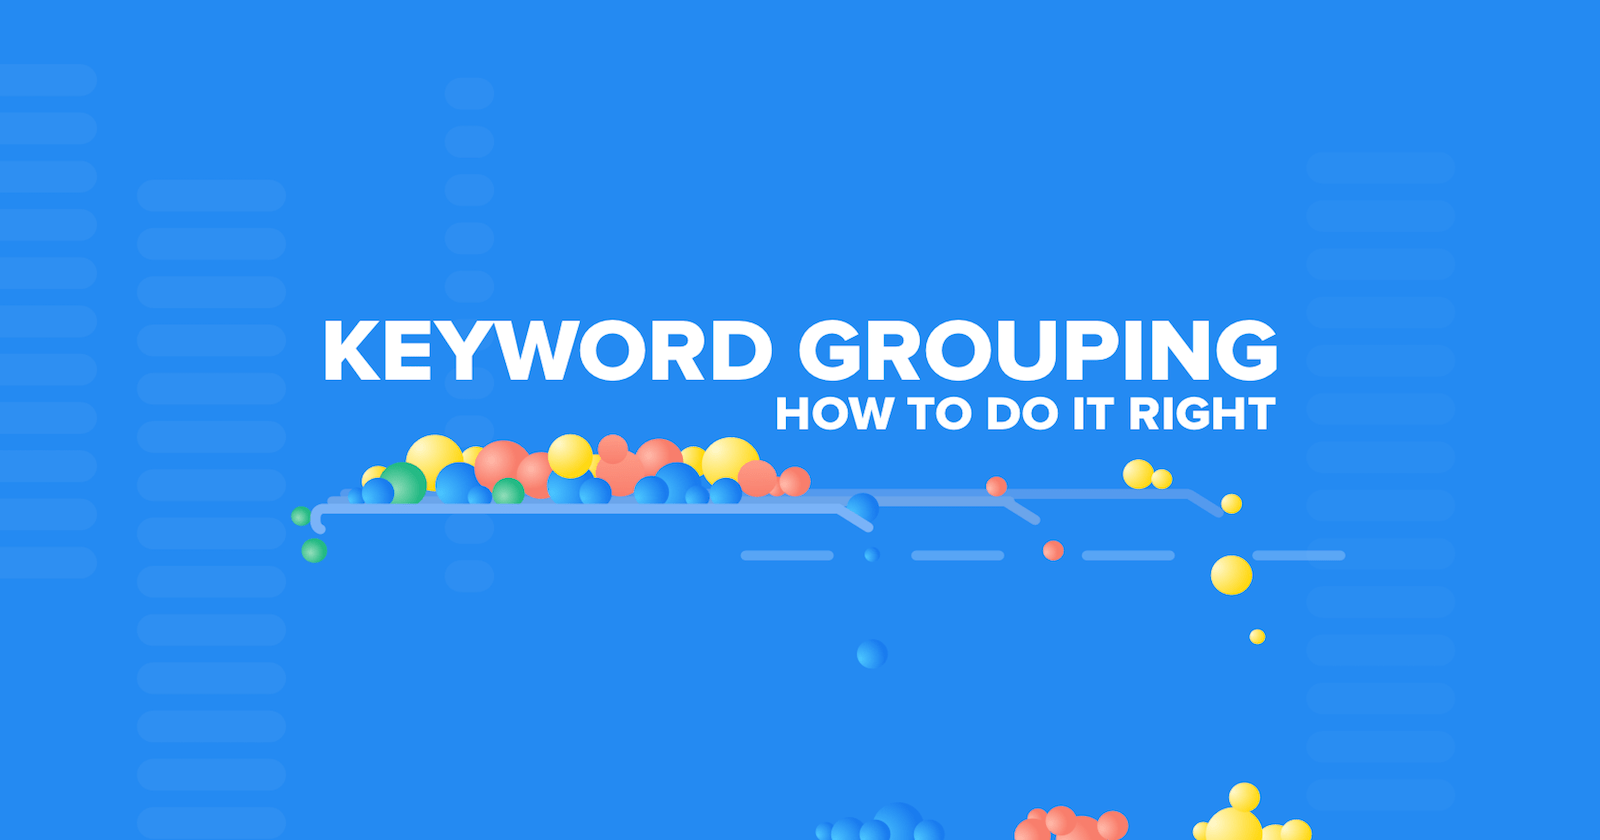 Keyword grouping